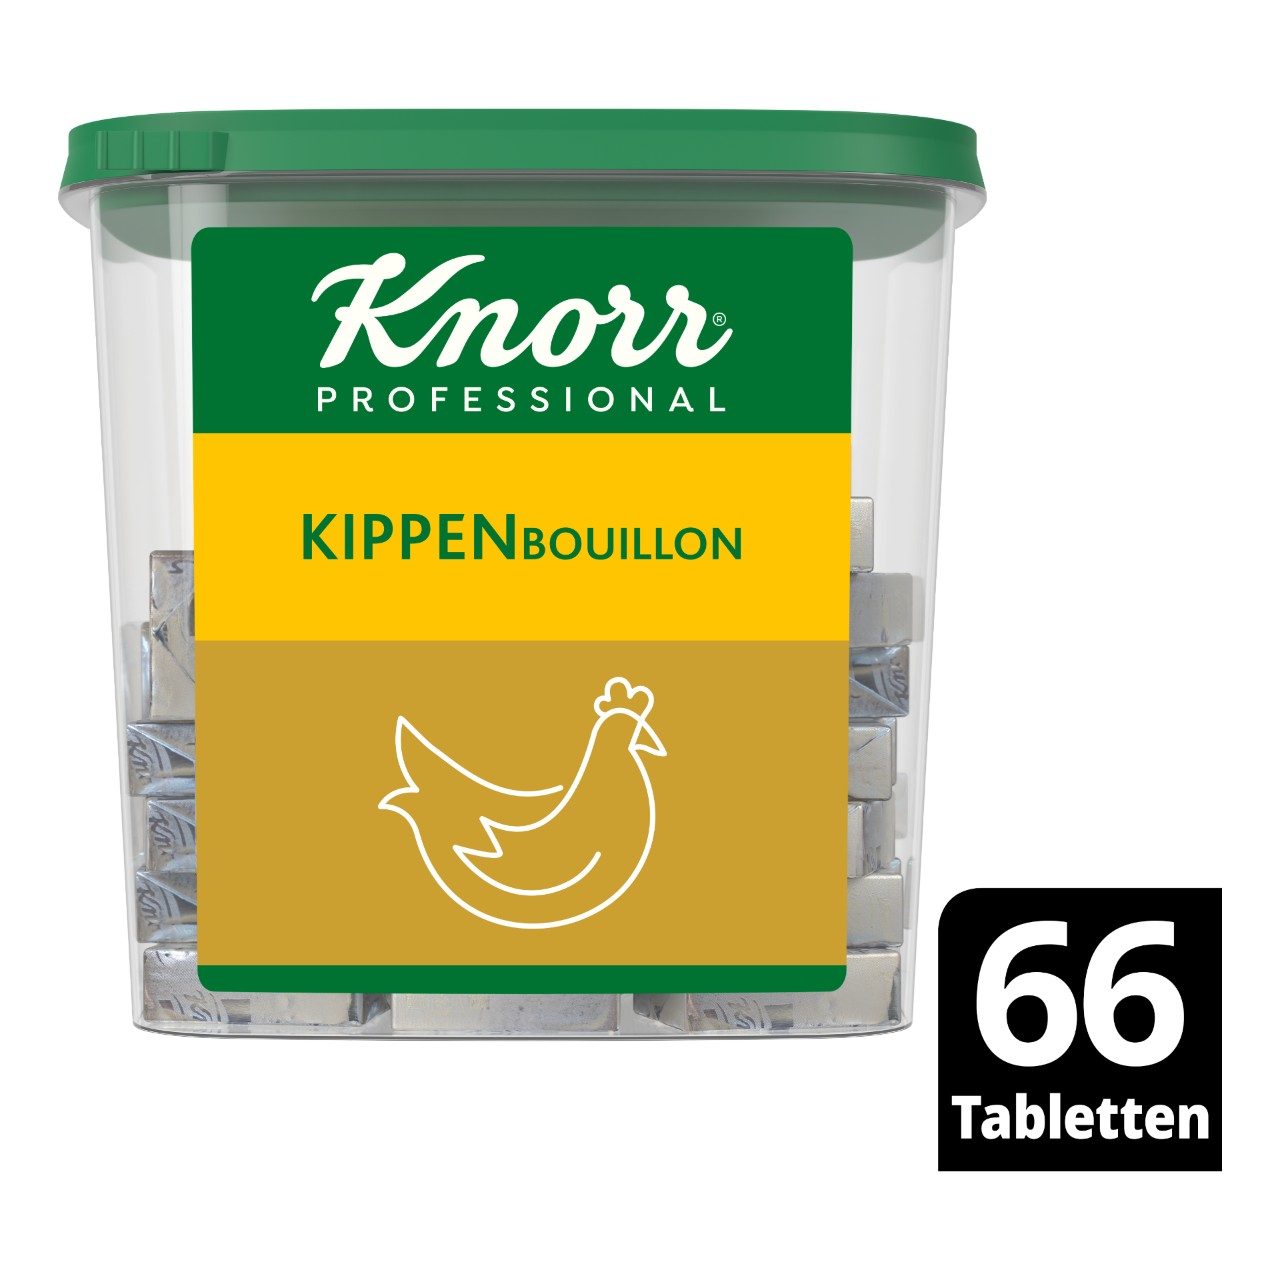 Kippenbouillon tabletten